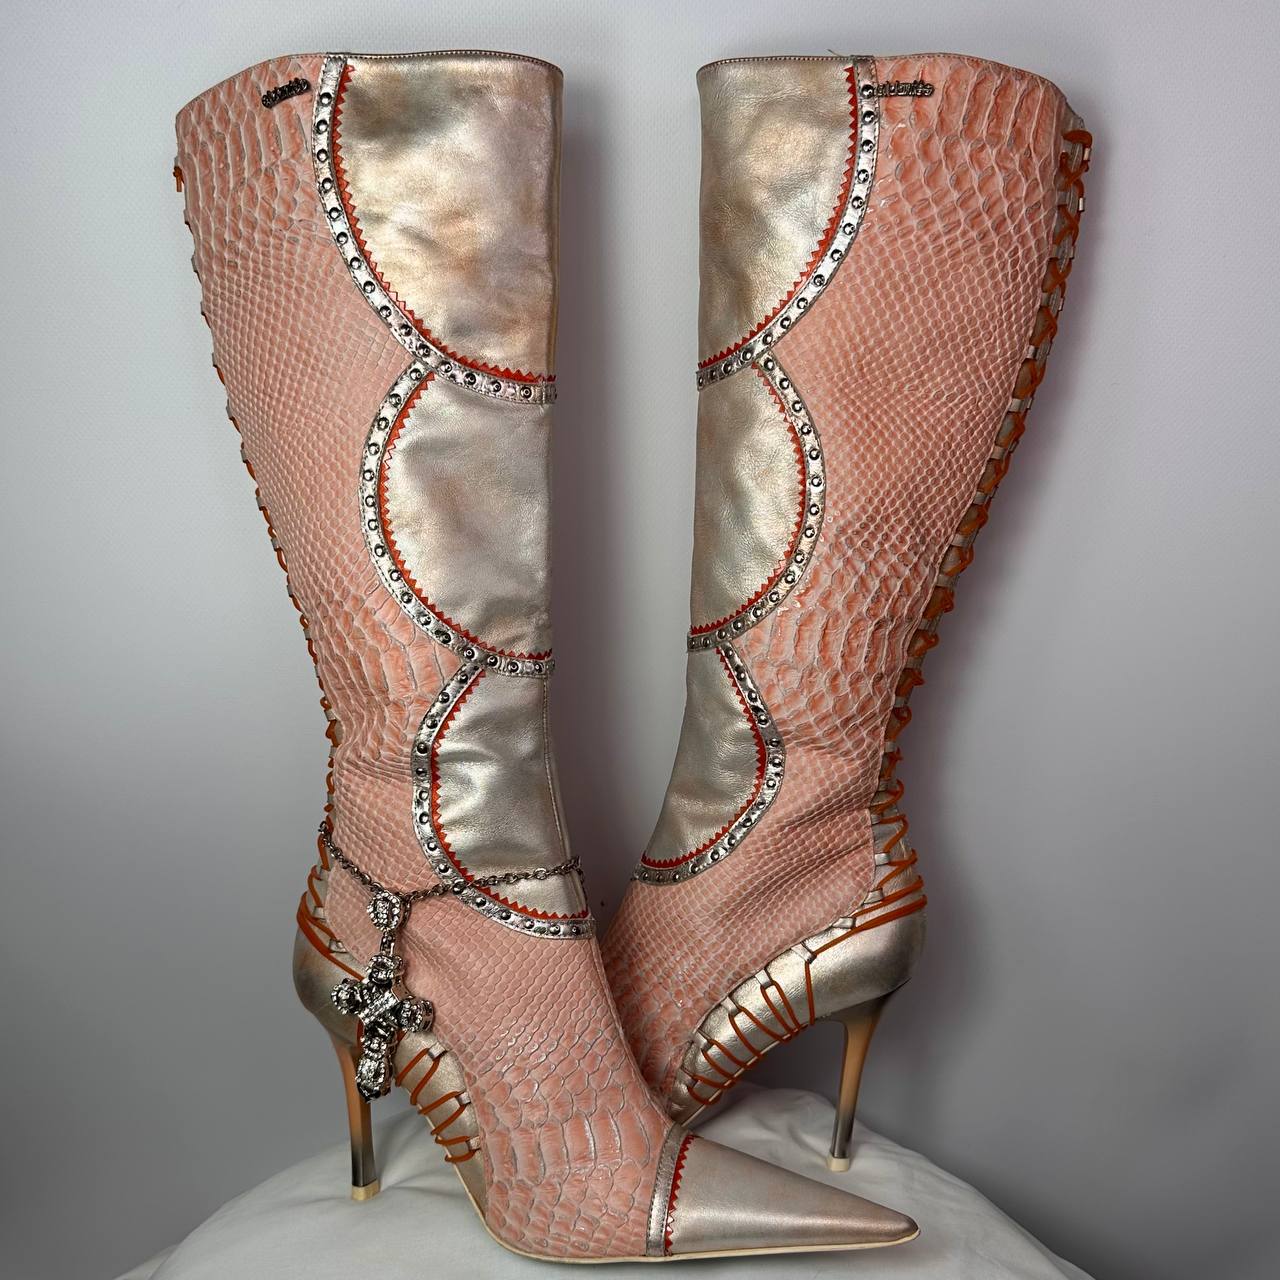 El Dante’s Vintage Knee High boots